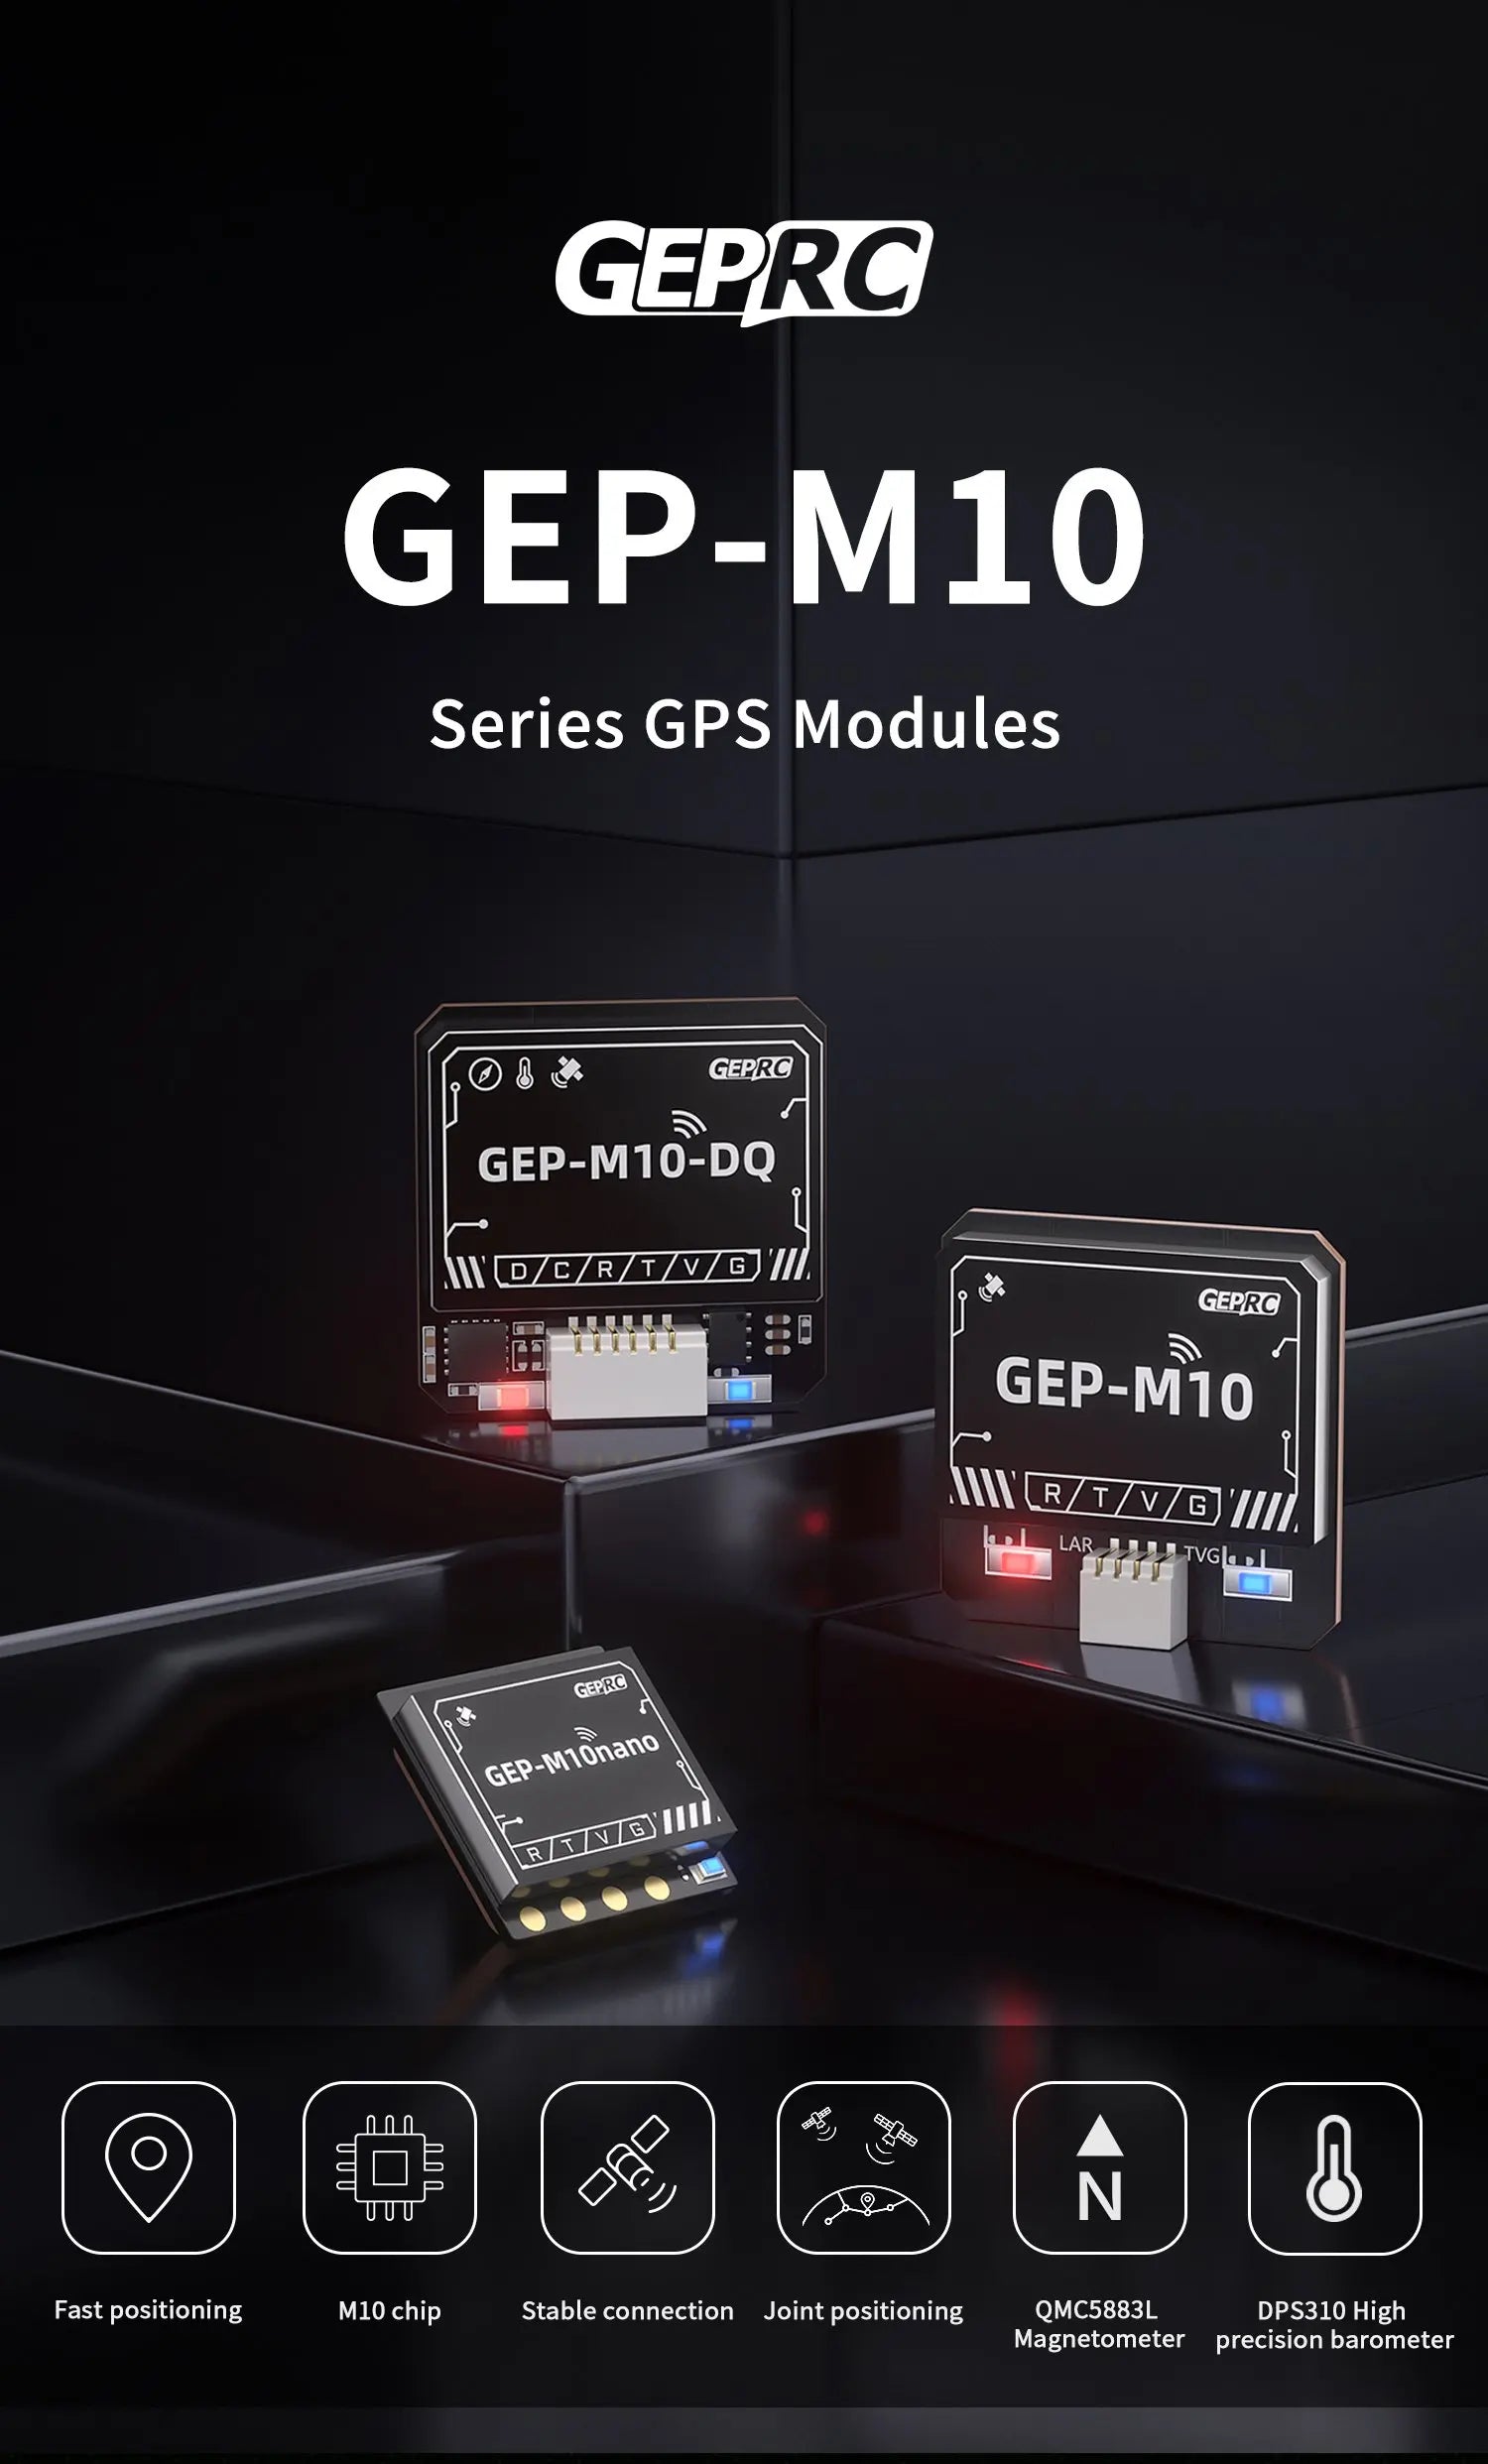 GEPRC GEP-M10 Series GPS, GEPRO GEP-Mio RHiIv G LAR TvG